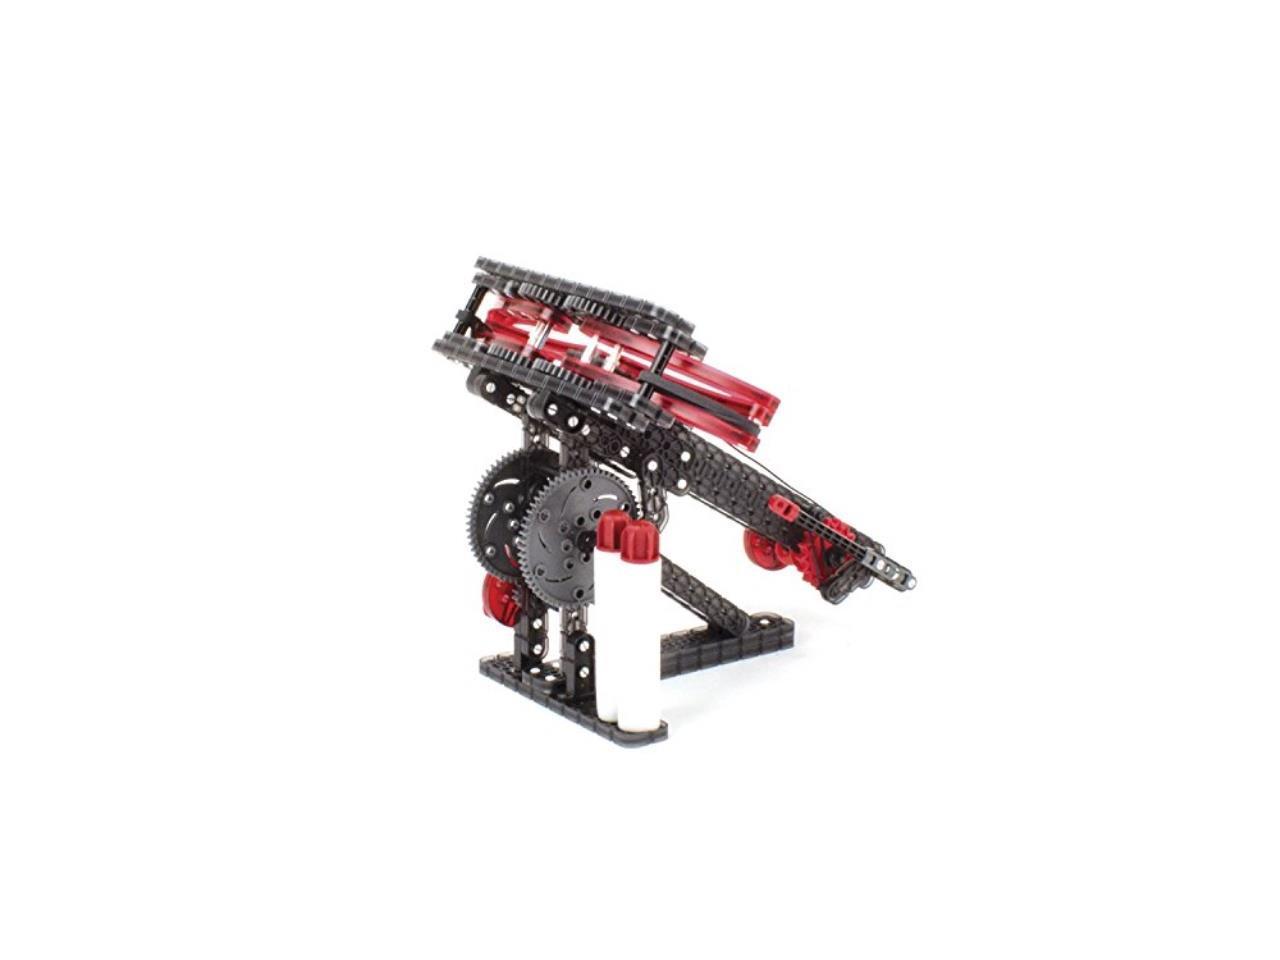 NEW HEXBUG VEX Robotics Robotic Crossbow Launcher Toy STEM Kids Science Gift! 